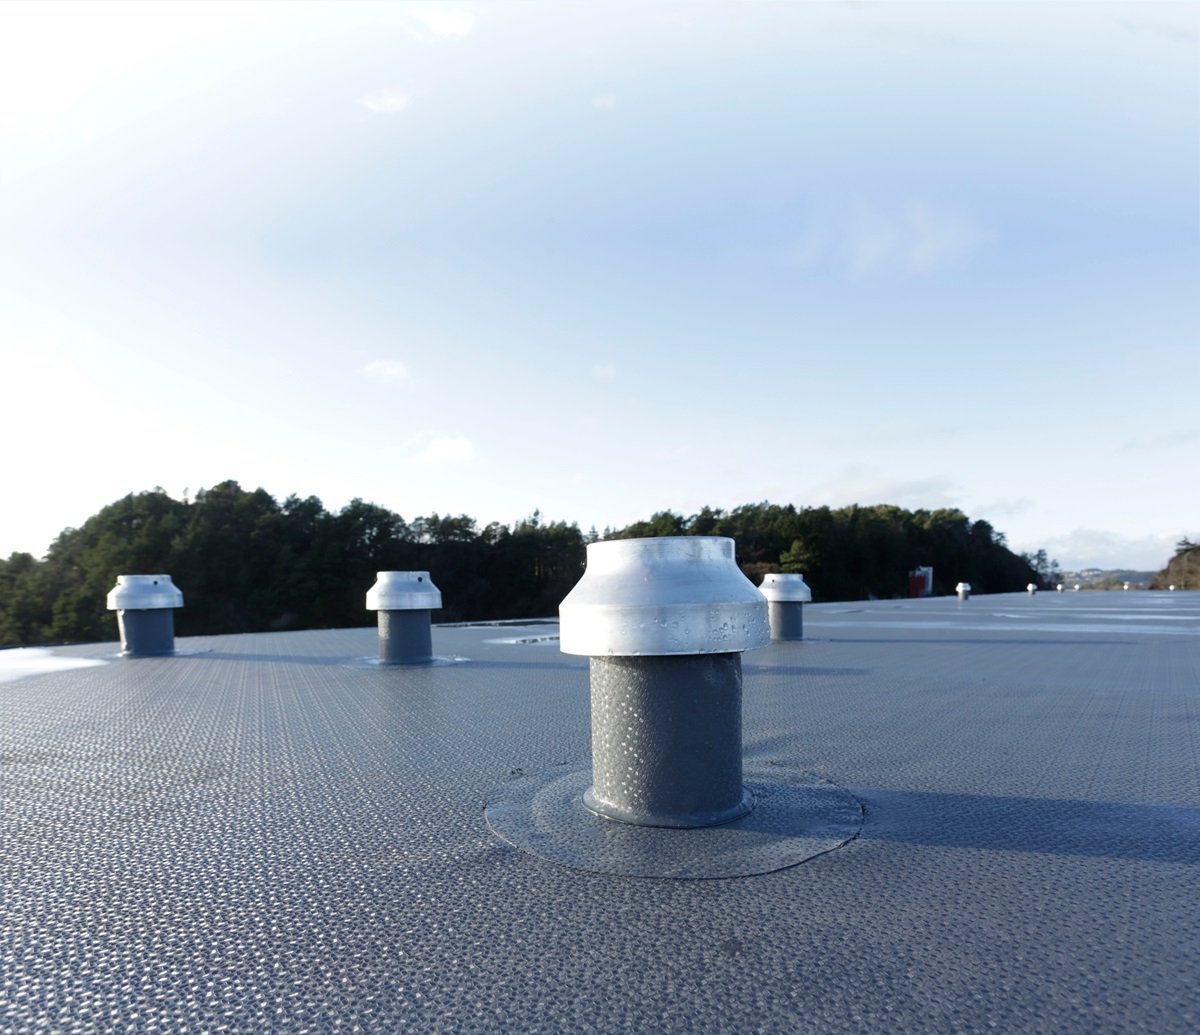 Stary dach jako nowy – renowacja pokryć dachowych z wykorzystaniem membrany